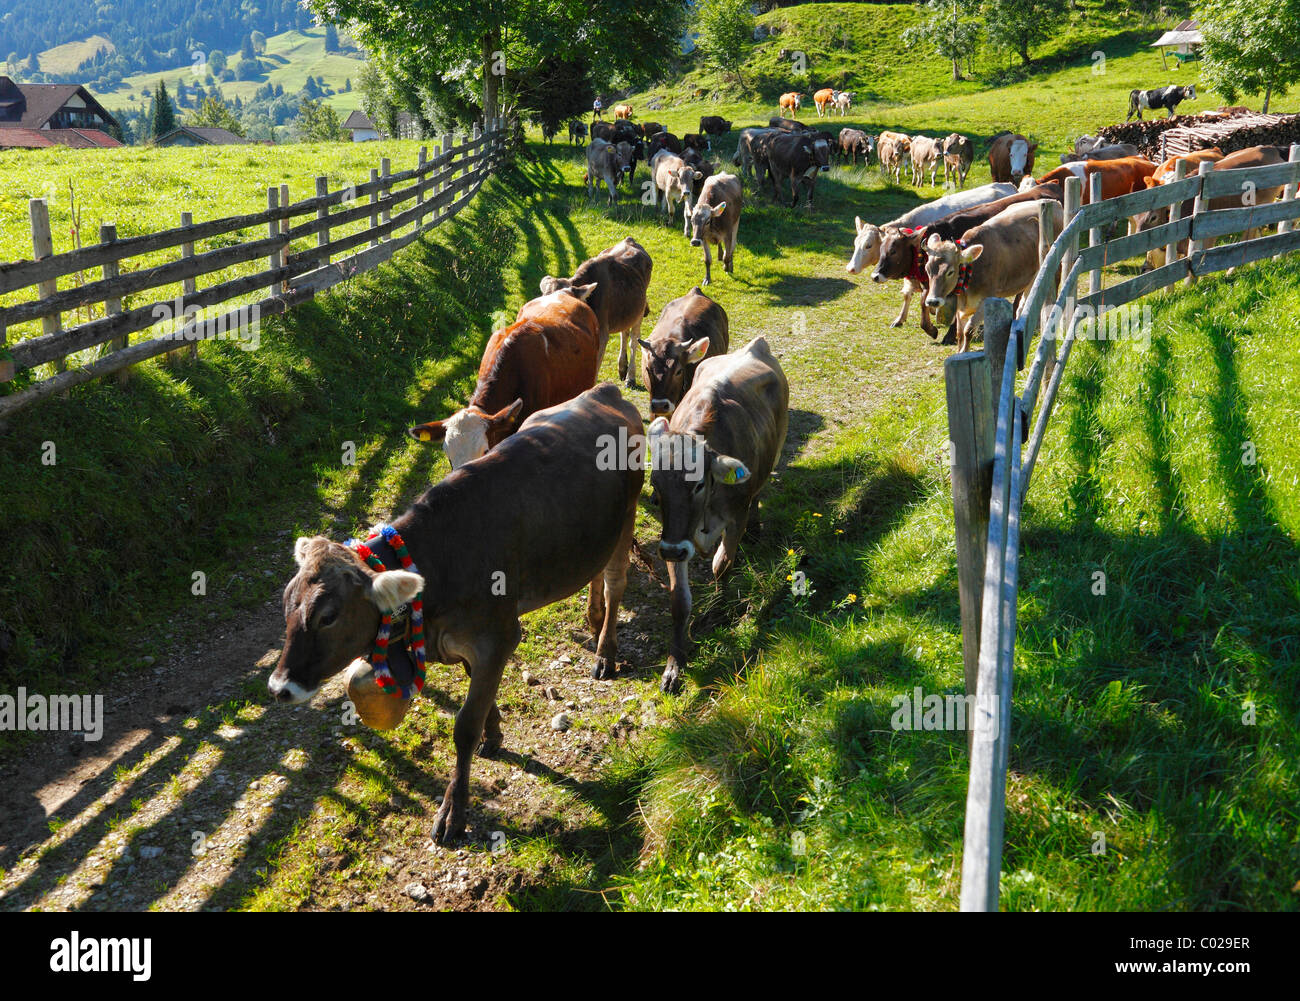 Conducción ceremonial de ganado, el retorno de los animales a sus respectivos propietarios, Pfronten, distrito Ostallgaeu Foto de stock